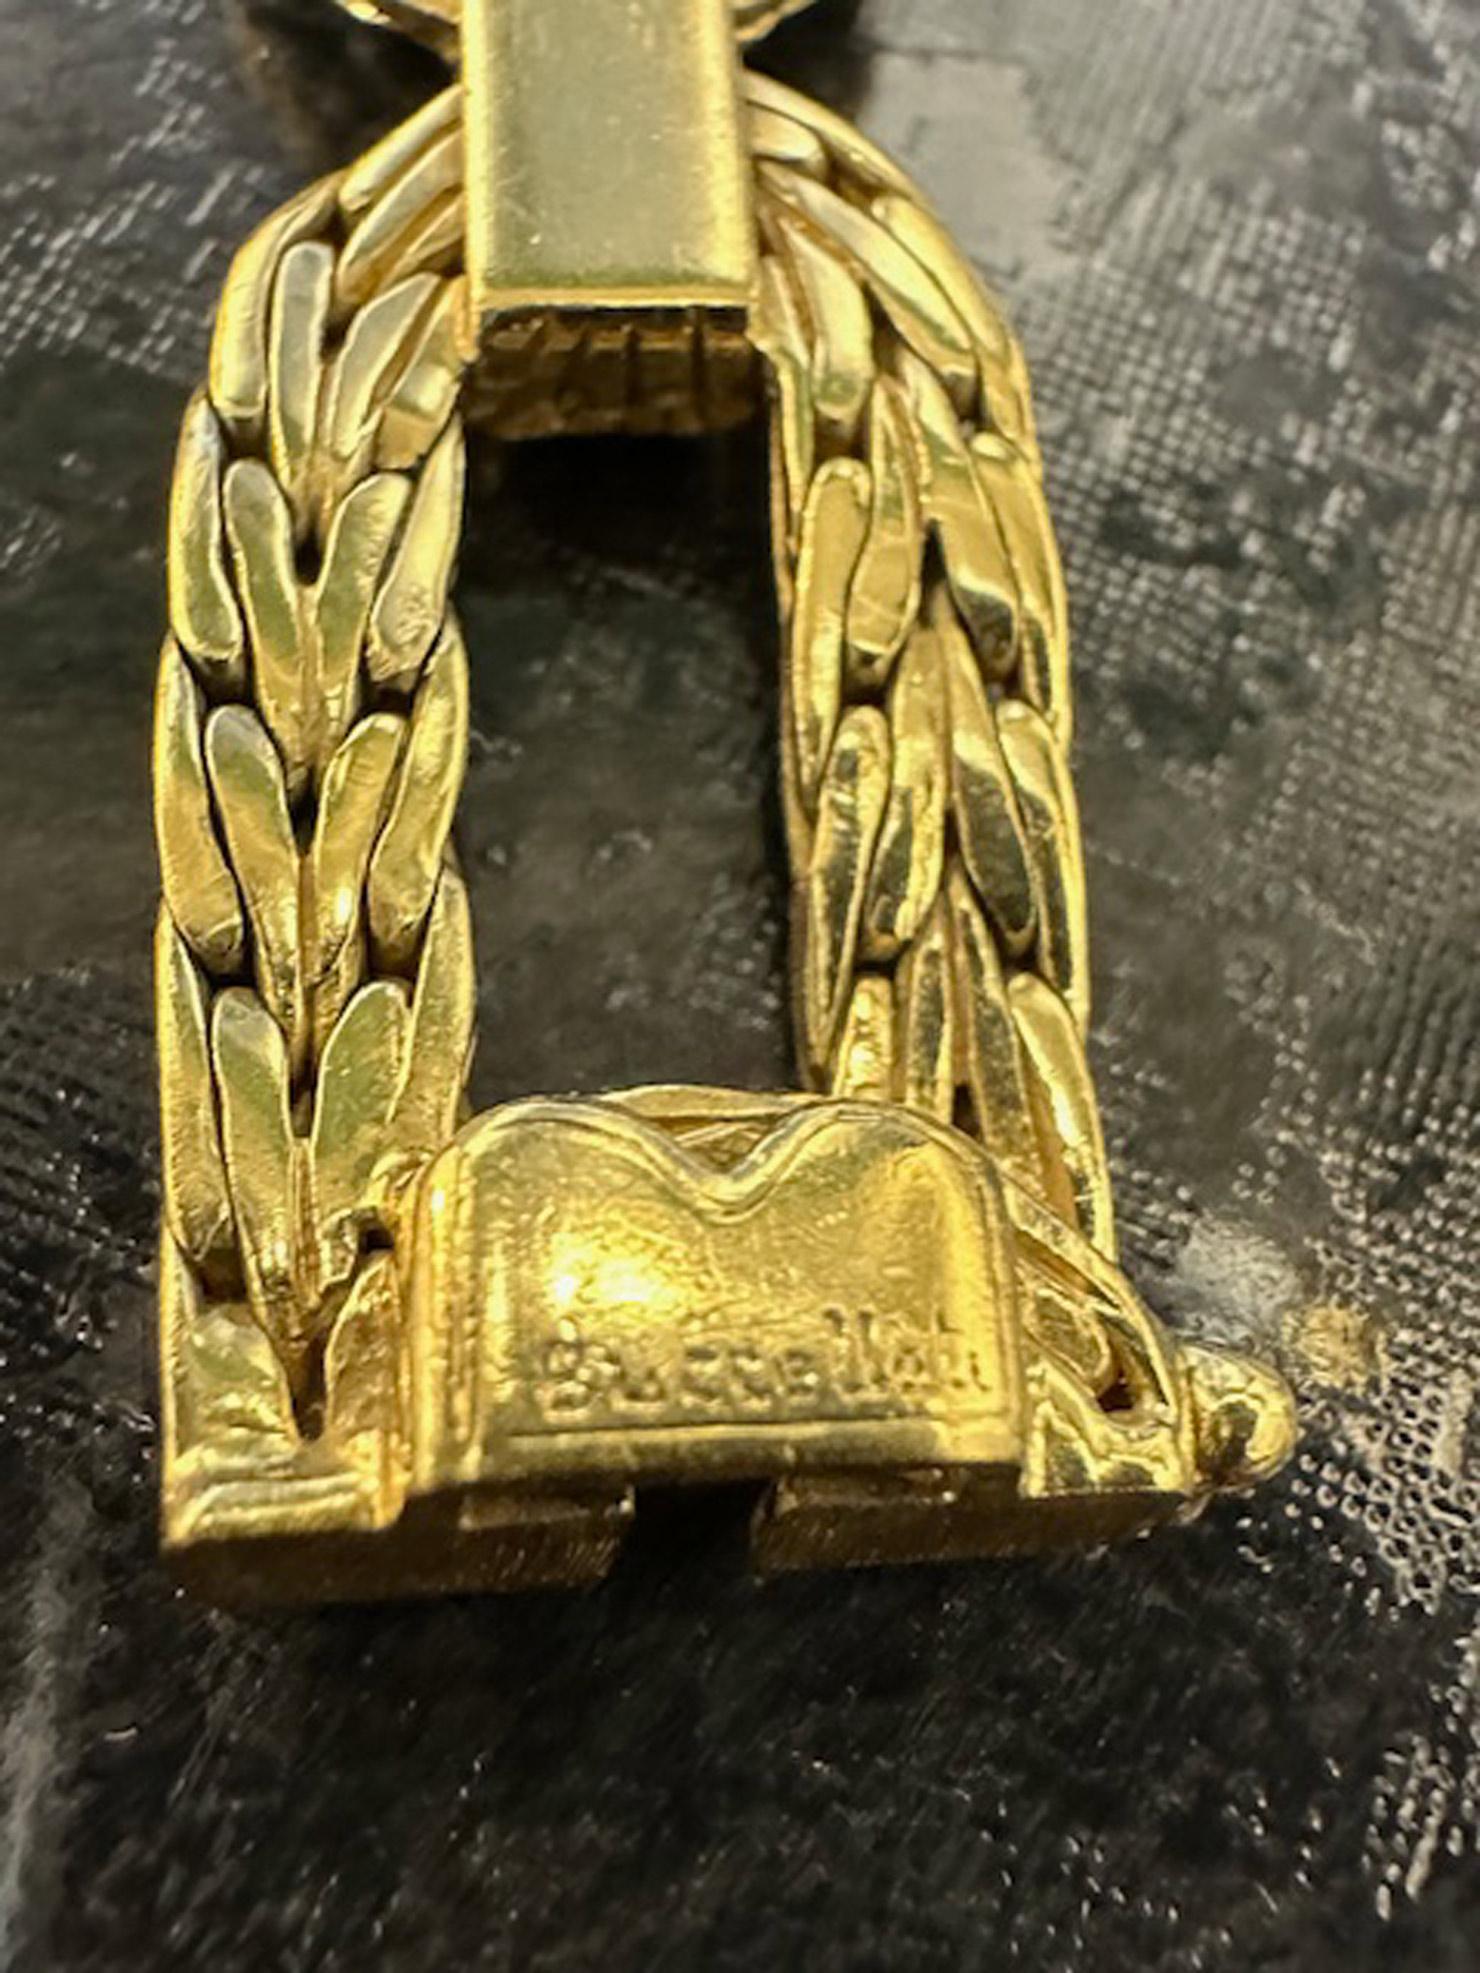 Meisterhaft handgefertigt aus 18 Karat Gelbgold von dem renommierten italienischen Juwelier Buccellati. Das Armband besteht aus 8 biegsamen, offenen Elementen in einem verstrebten Design aus mattem Gold. Signiert 